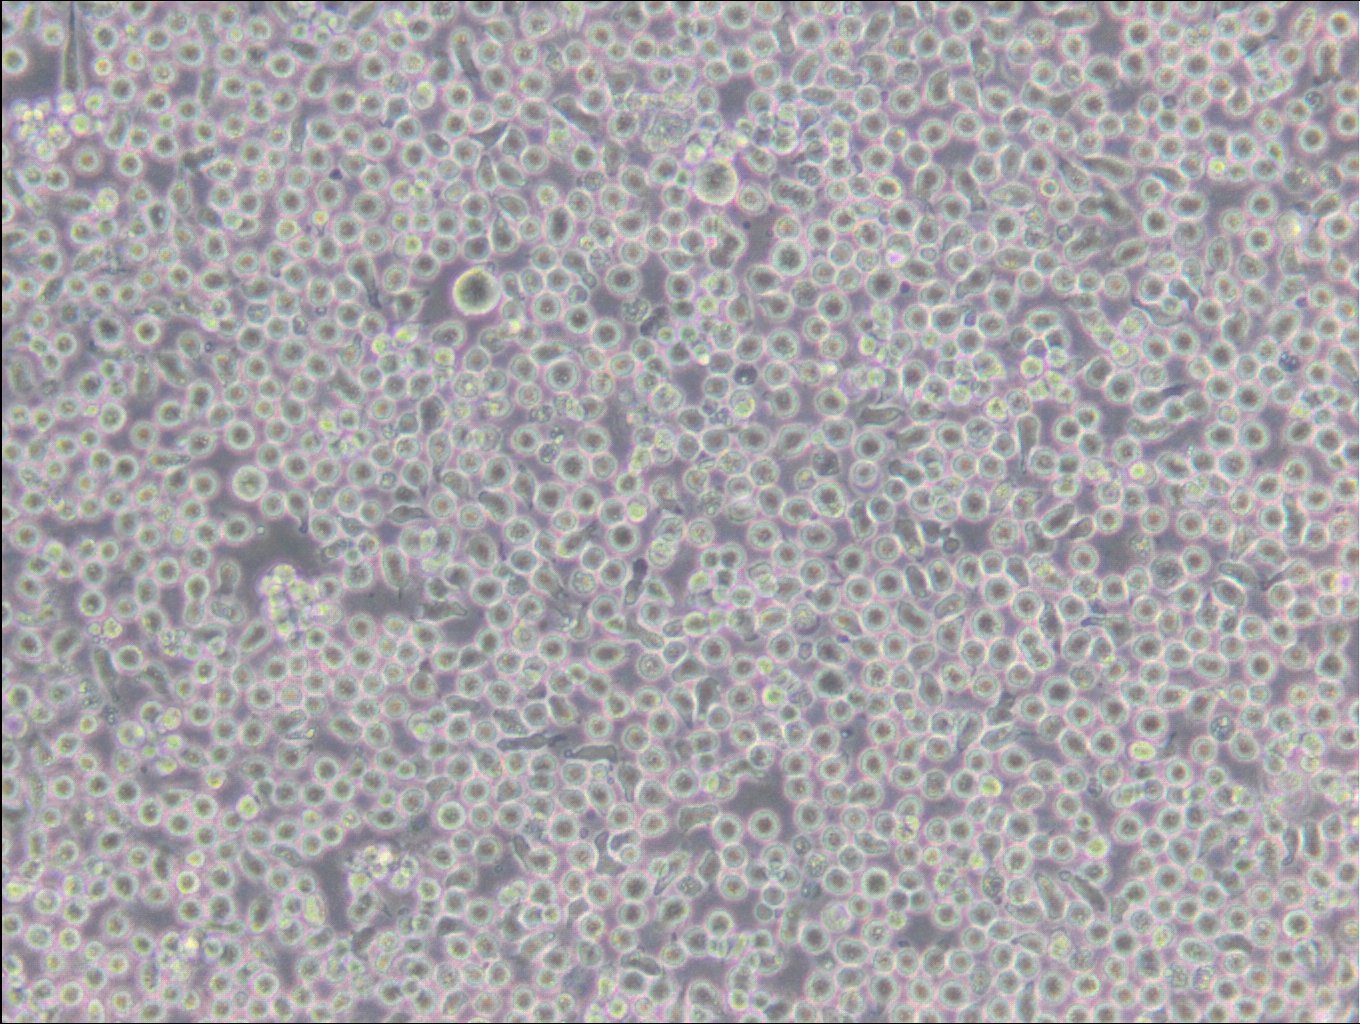 6T-CEM Cells